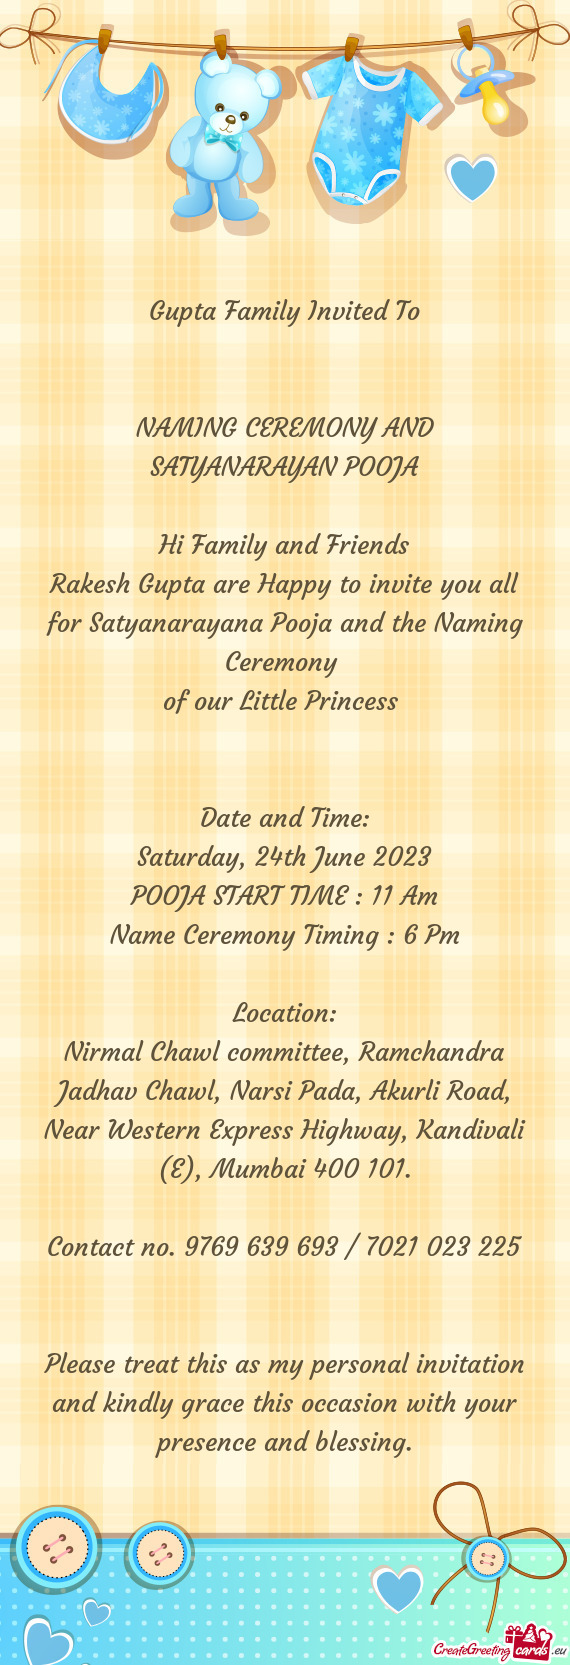 Gupta Family Invited To